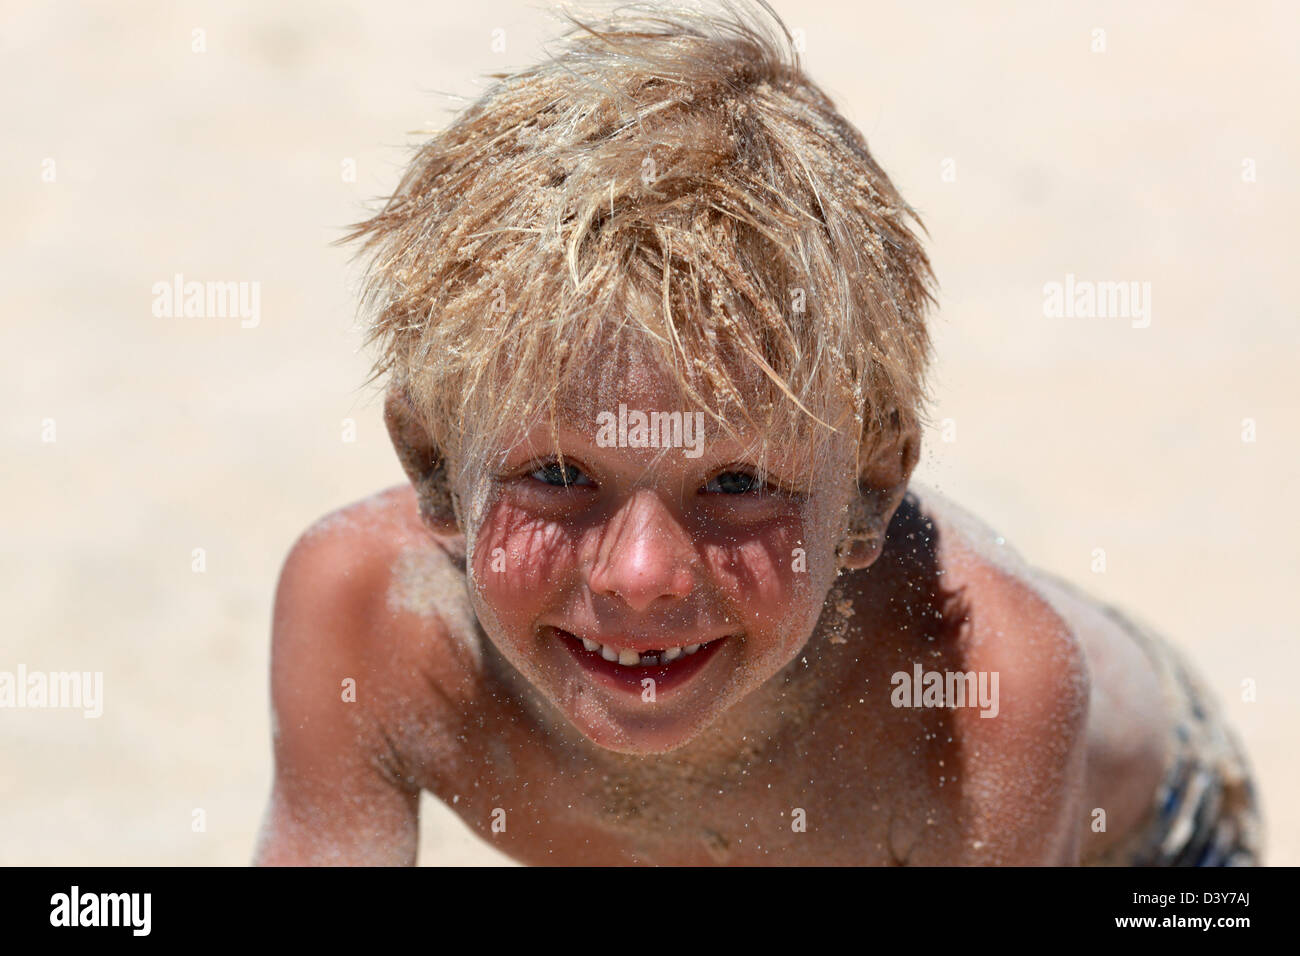 Santa Margherita di Pula, Italie, le garçon aux cheveux de sable regarde smiling at viewer Banque D'Images